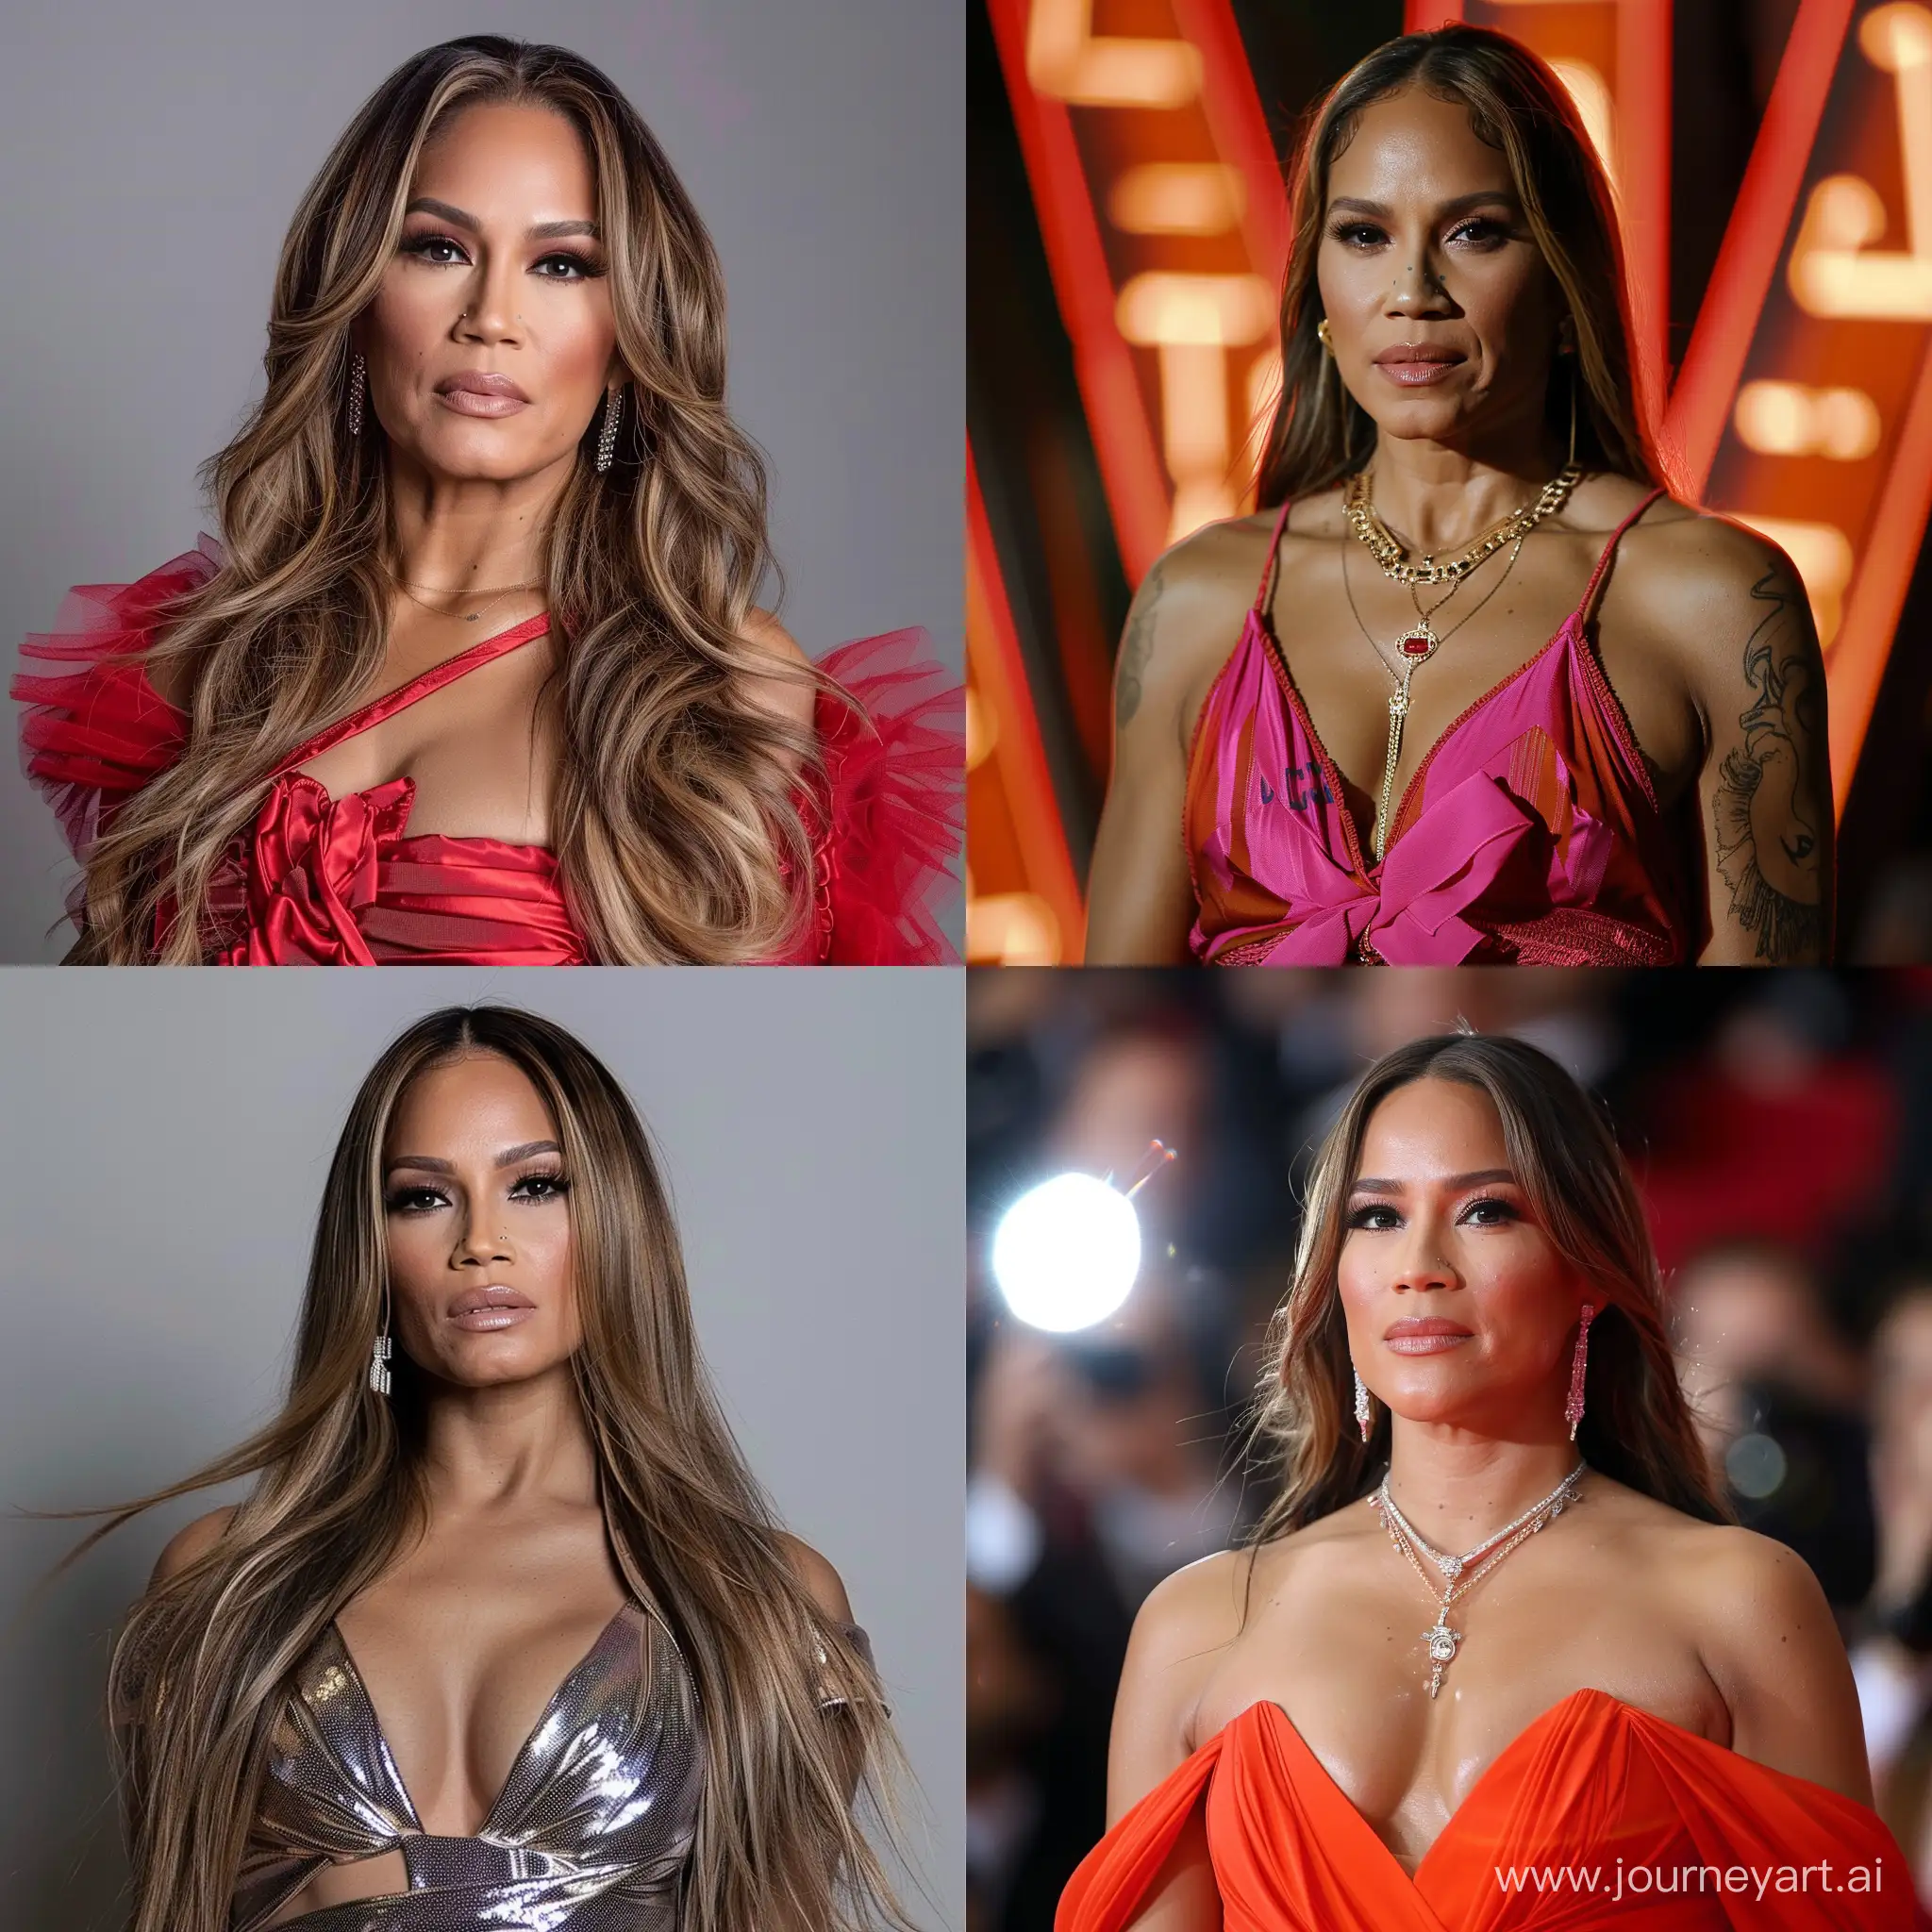 Jennifer-Lopez-Glamorous-Portrait-with-Vibrant-Colors-and-Unique-Angles